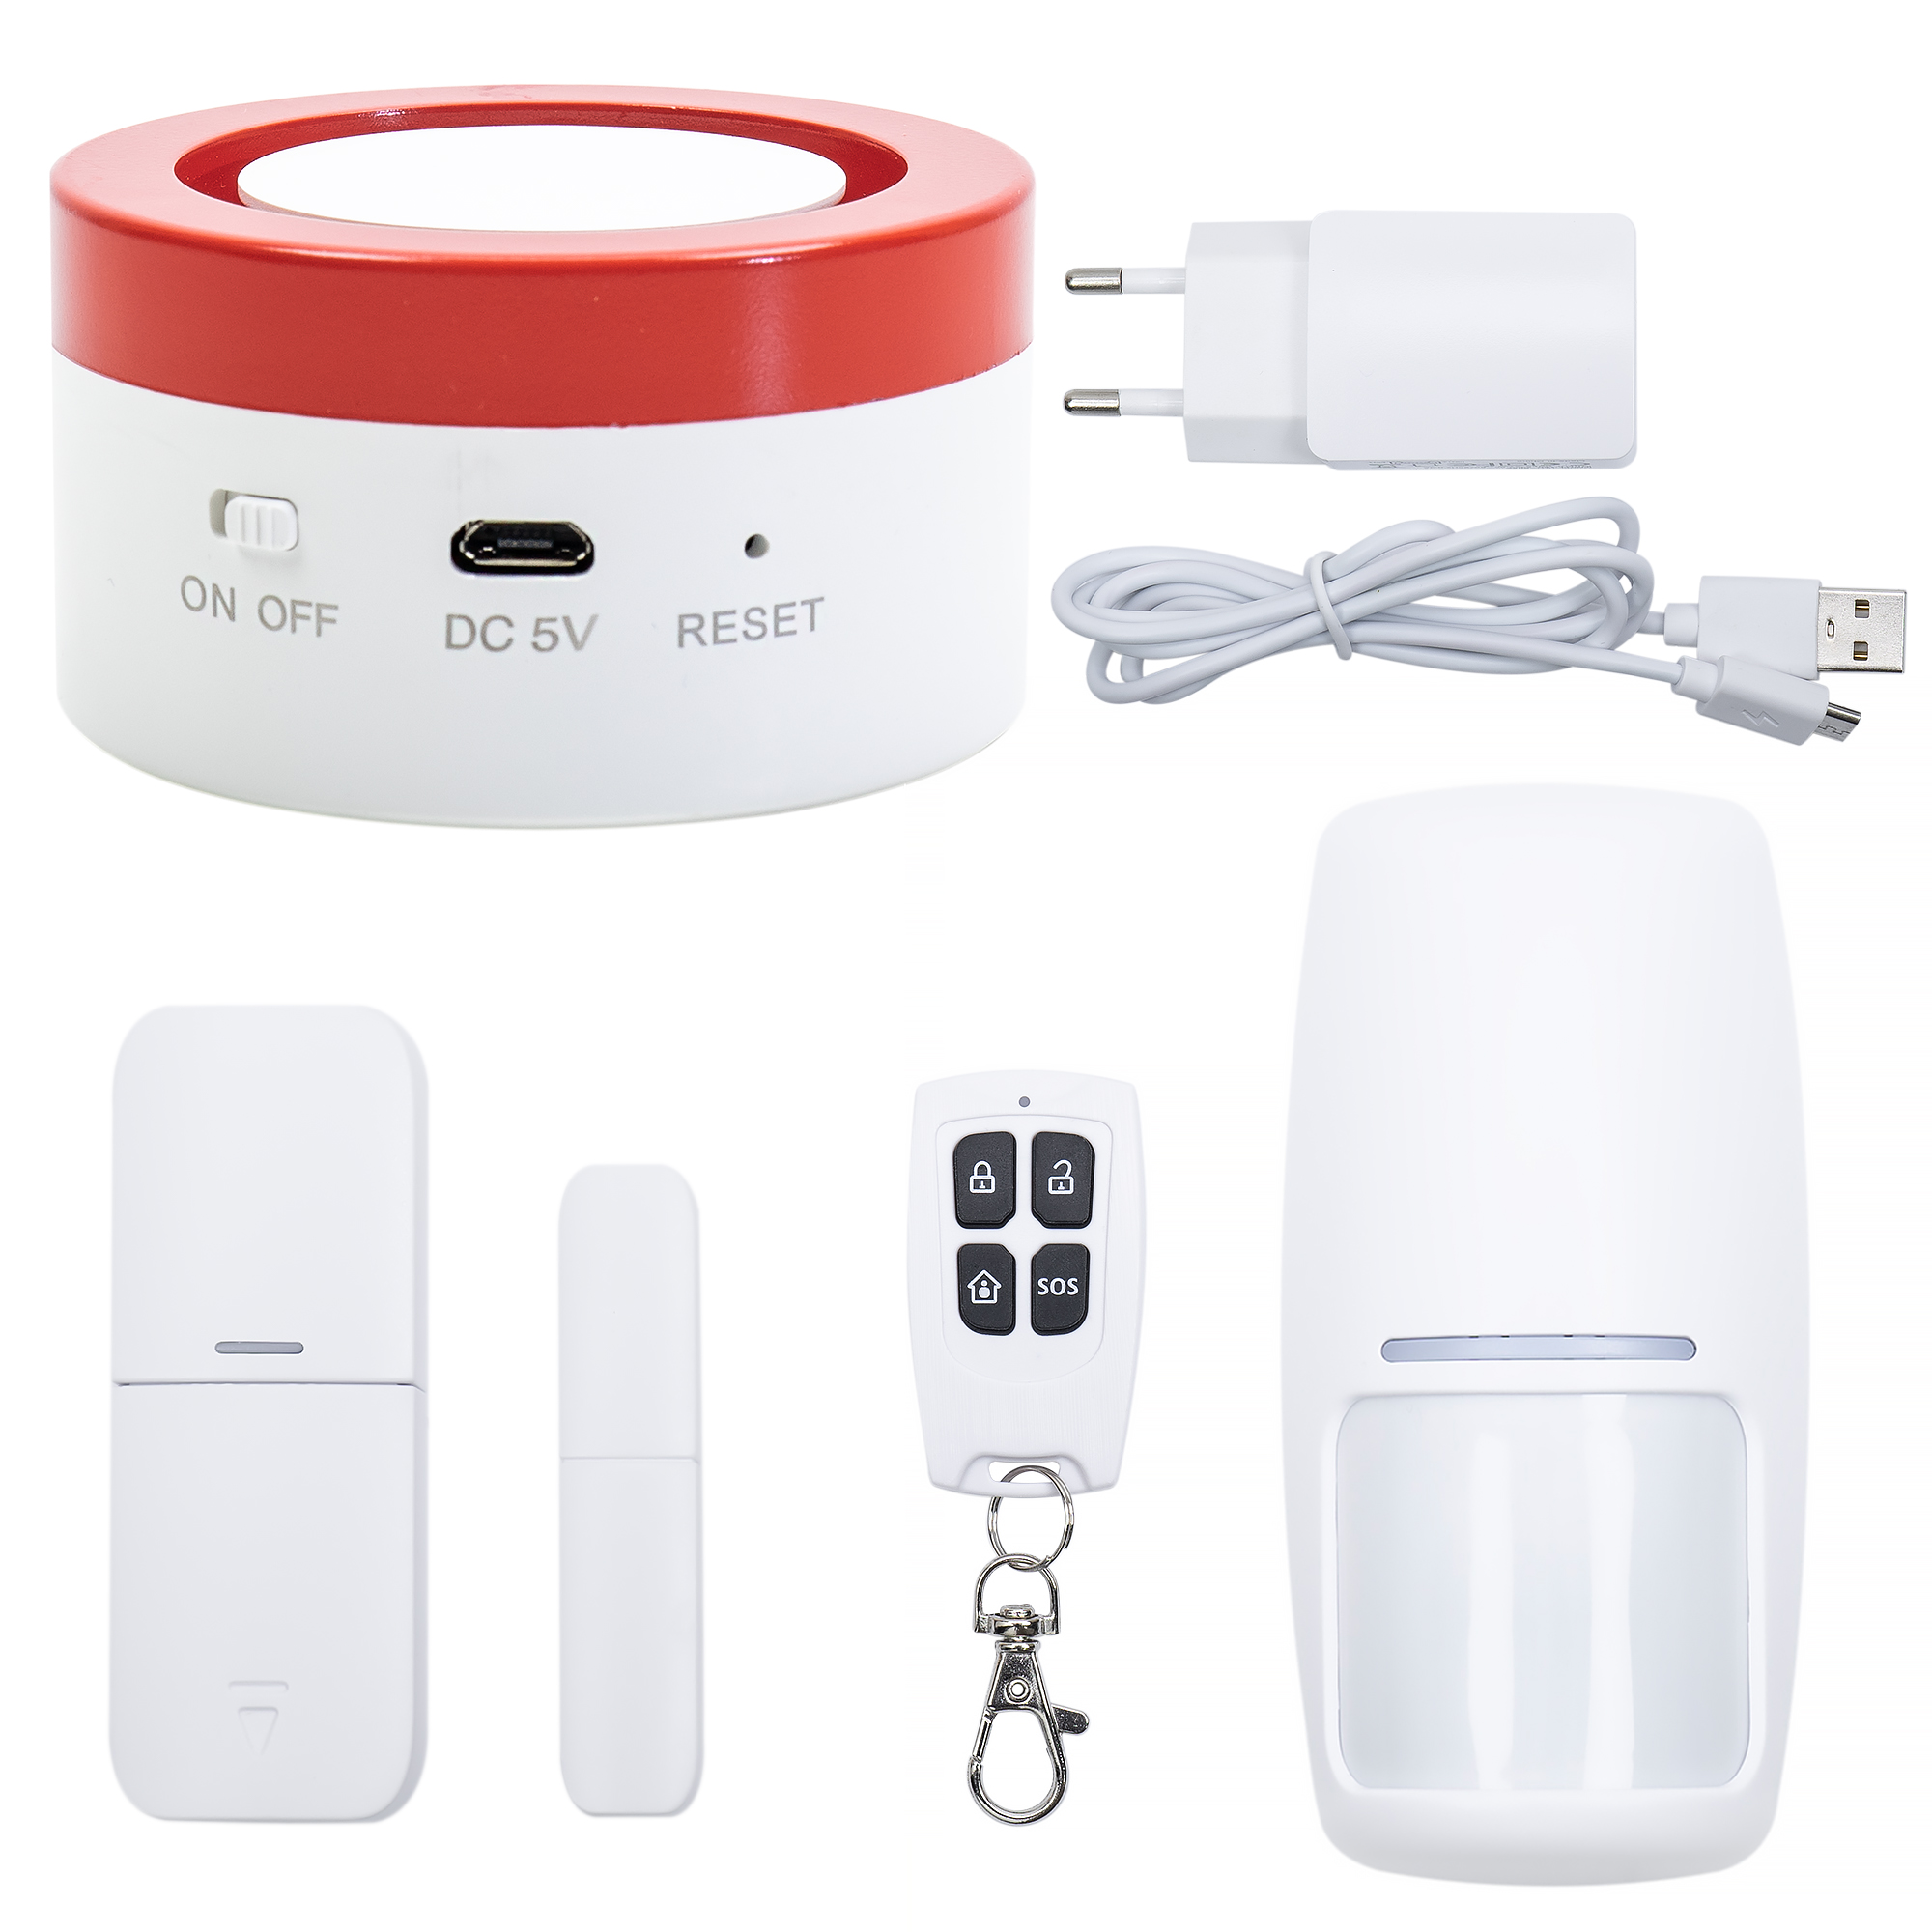 Sistem de alarma wireless PNI Safe House PG600LR, sistem inteligent de securitate pentru casa, conectare wireless, alarma antiefractie, alarma fara fir, alerta inteligenta prin aplicatia TUYA iOS / An